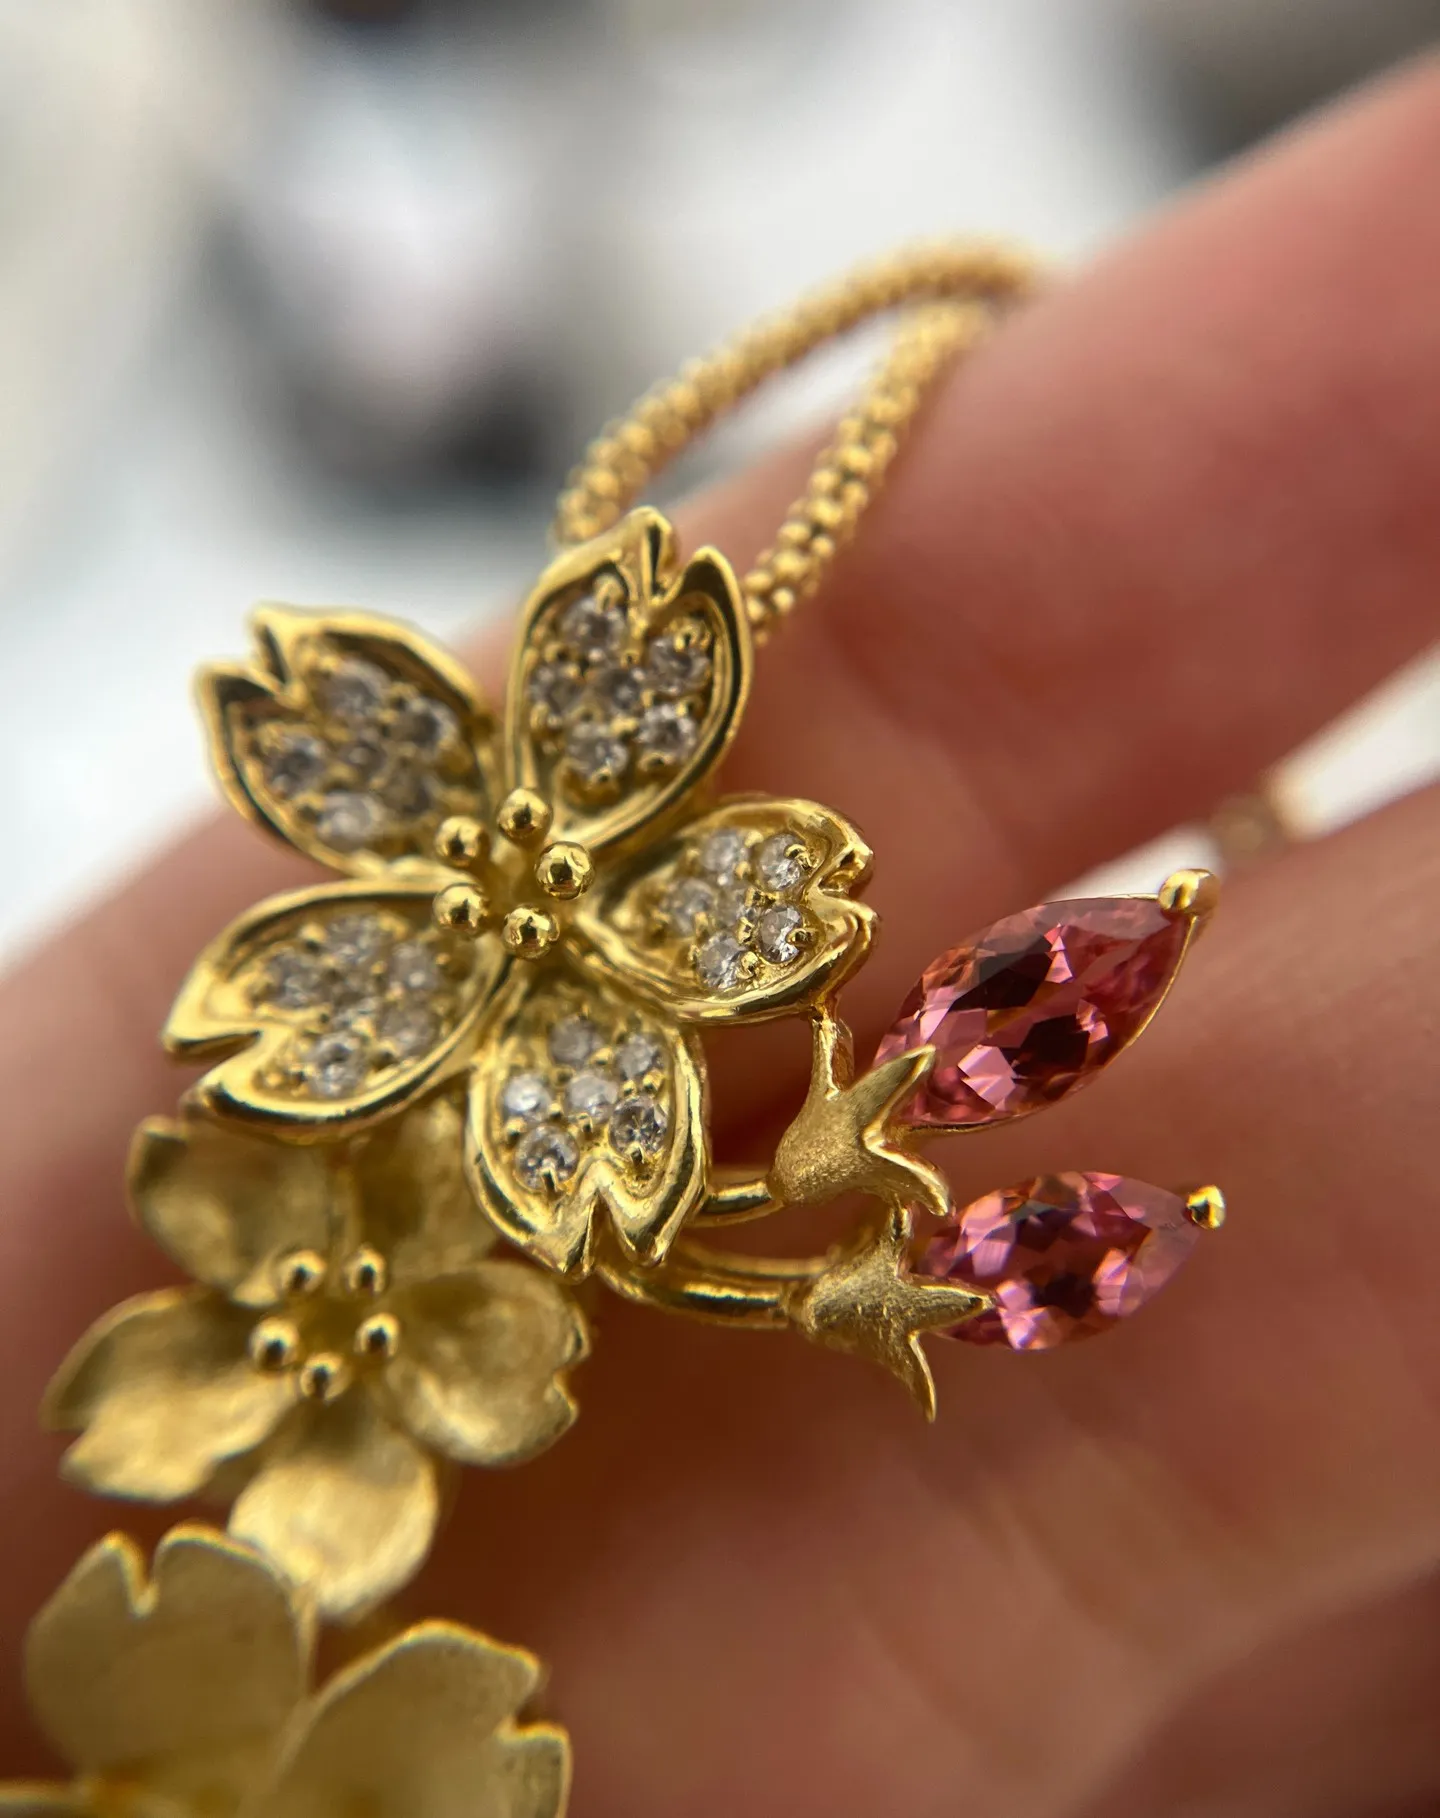 【アクセサリー買取】可愛らしい花にデザインした金のネックレス...